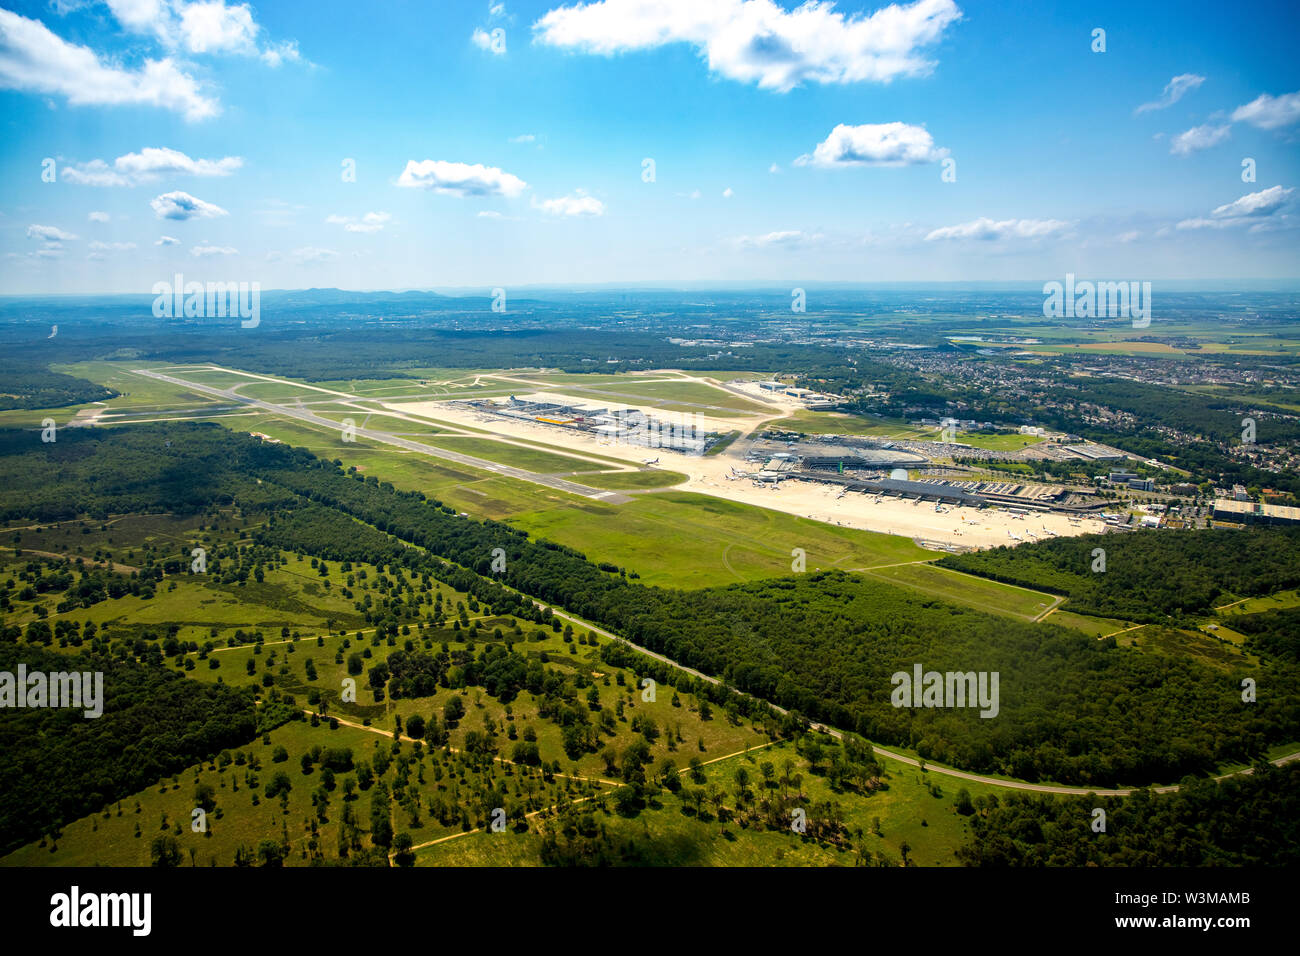 ,La fotografia aerea di Colonia / Bonn Airport "Konrad Adenauer' con check-in edifici e delle piste di atterraggio e di decollo, aeroporto internazionale nella parte sudorientale della Foto Stock